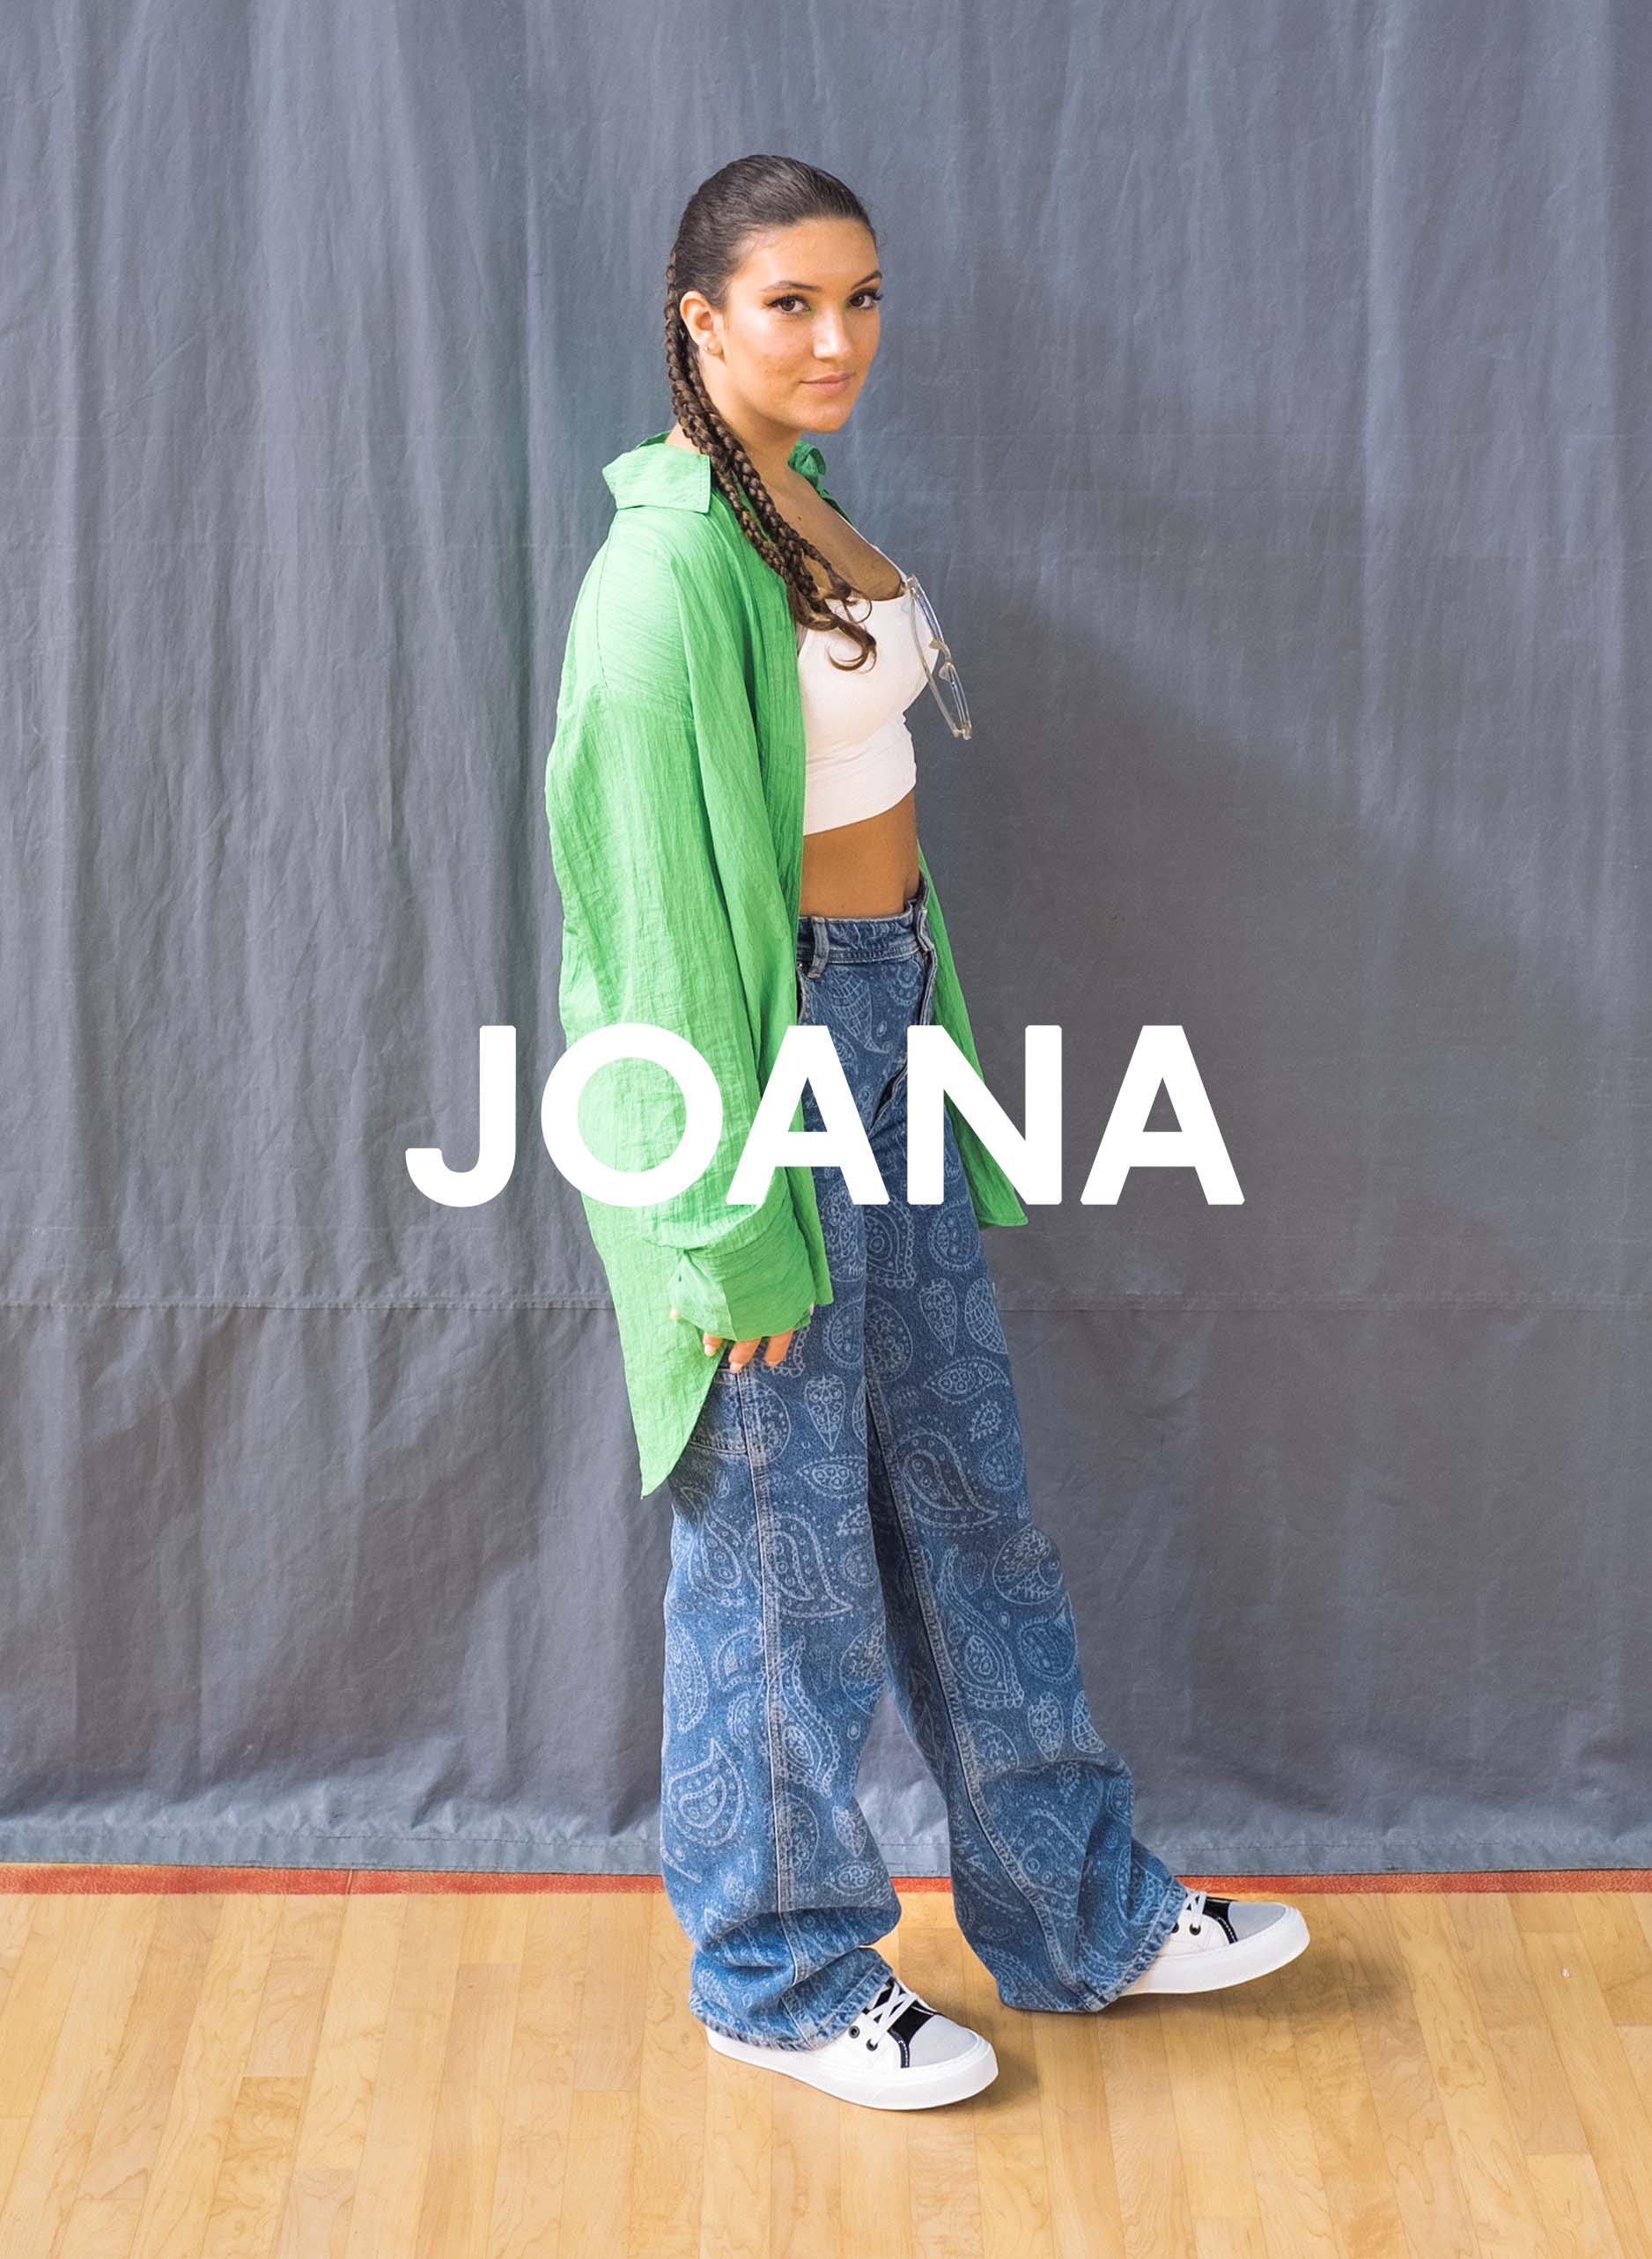 Joana in grünem Hemd und Jeans auf einem Holzboden stehend, Diverge sneakers, Förderung sozialer Auswirkungen und maßgefertigter Schuhe im Rahmen des IMAGINE-Projekts.  